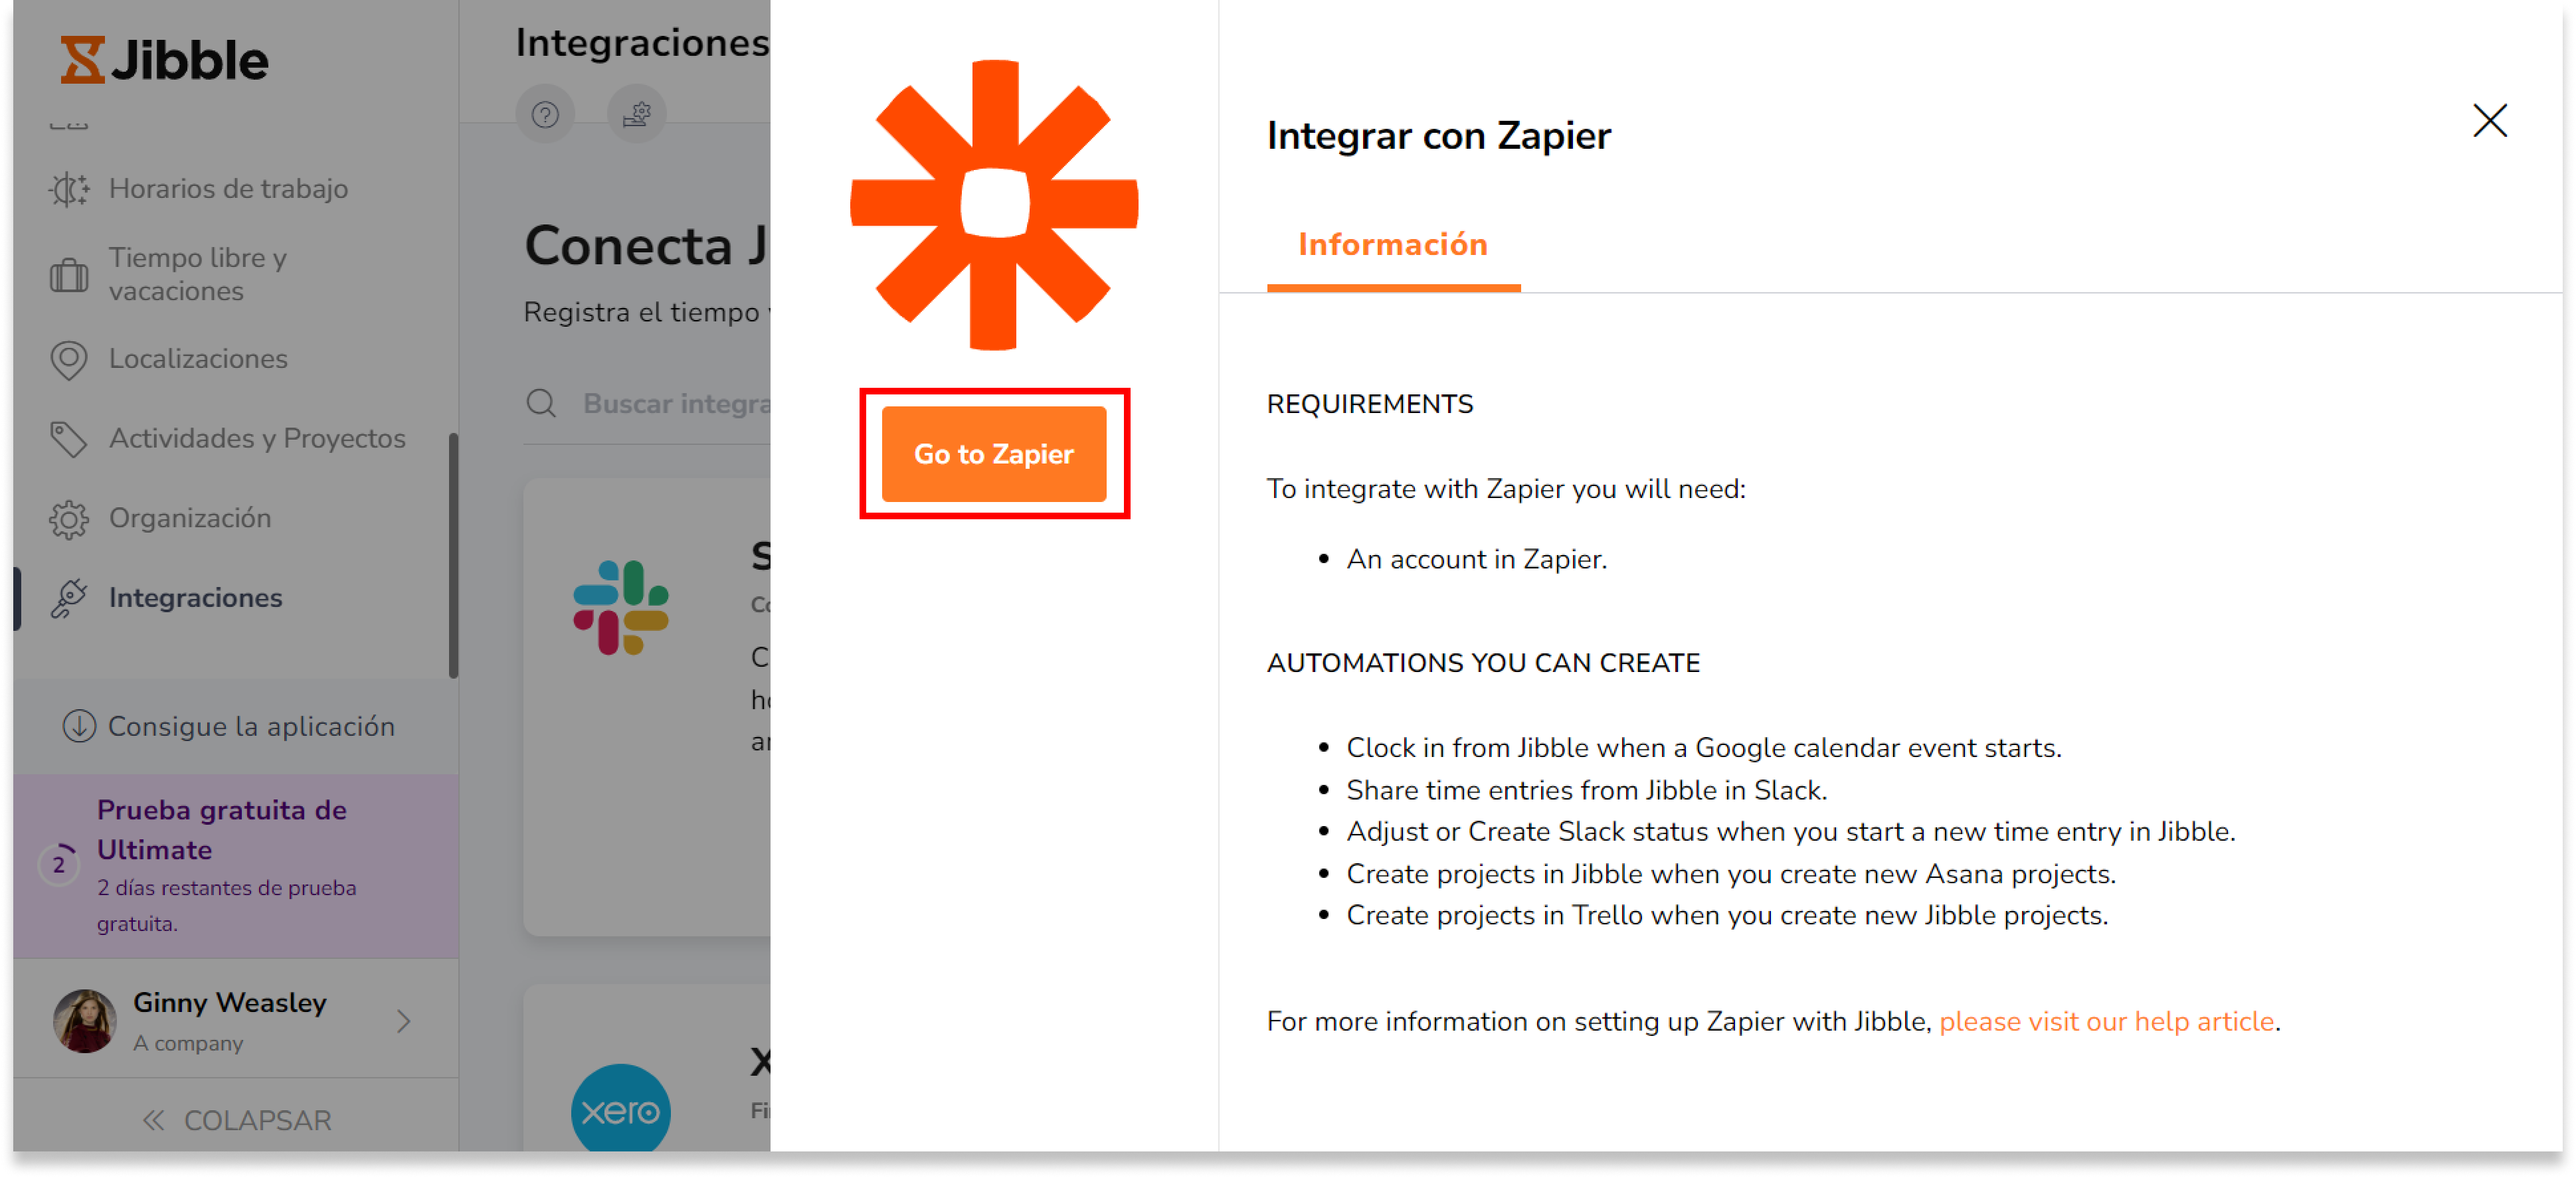 Verás un módulo que se integra con Zapier. Haz clic en "Ir a Zapier".